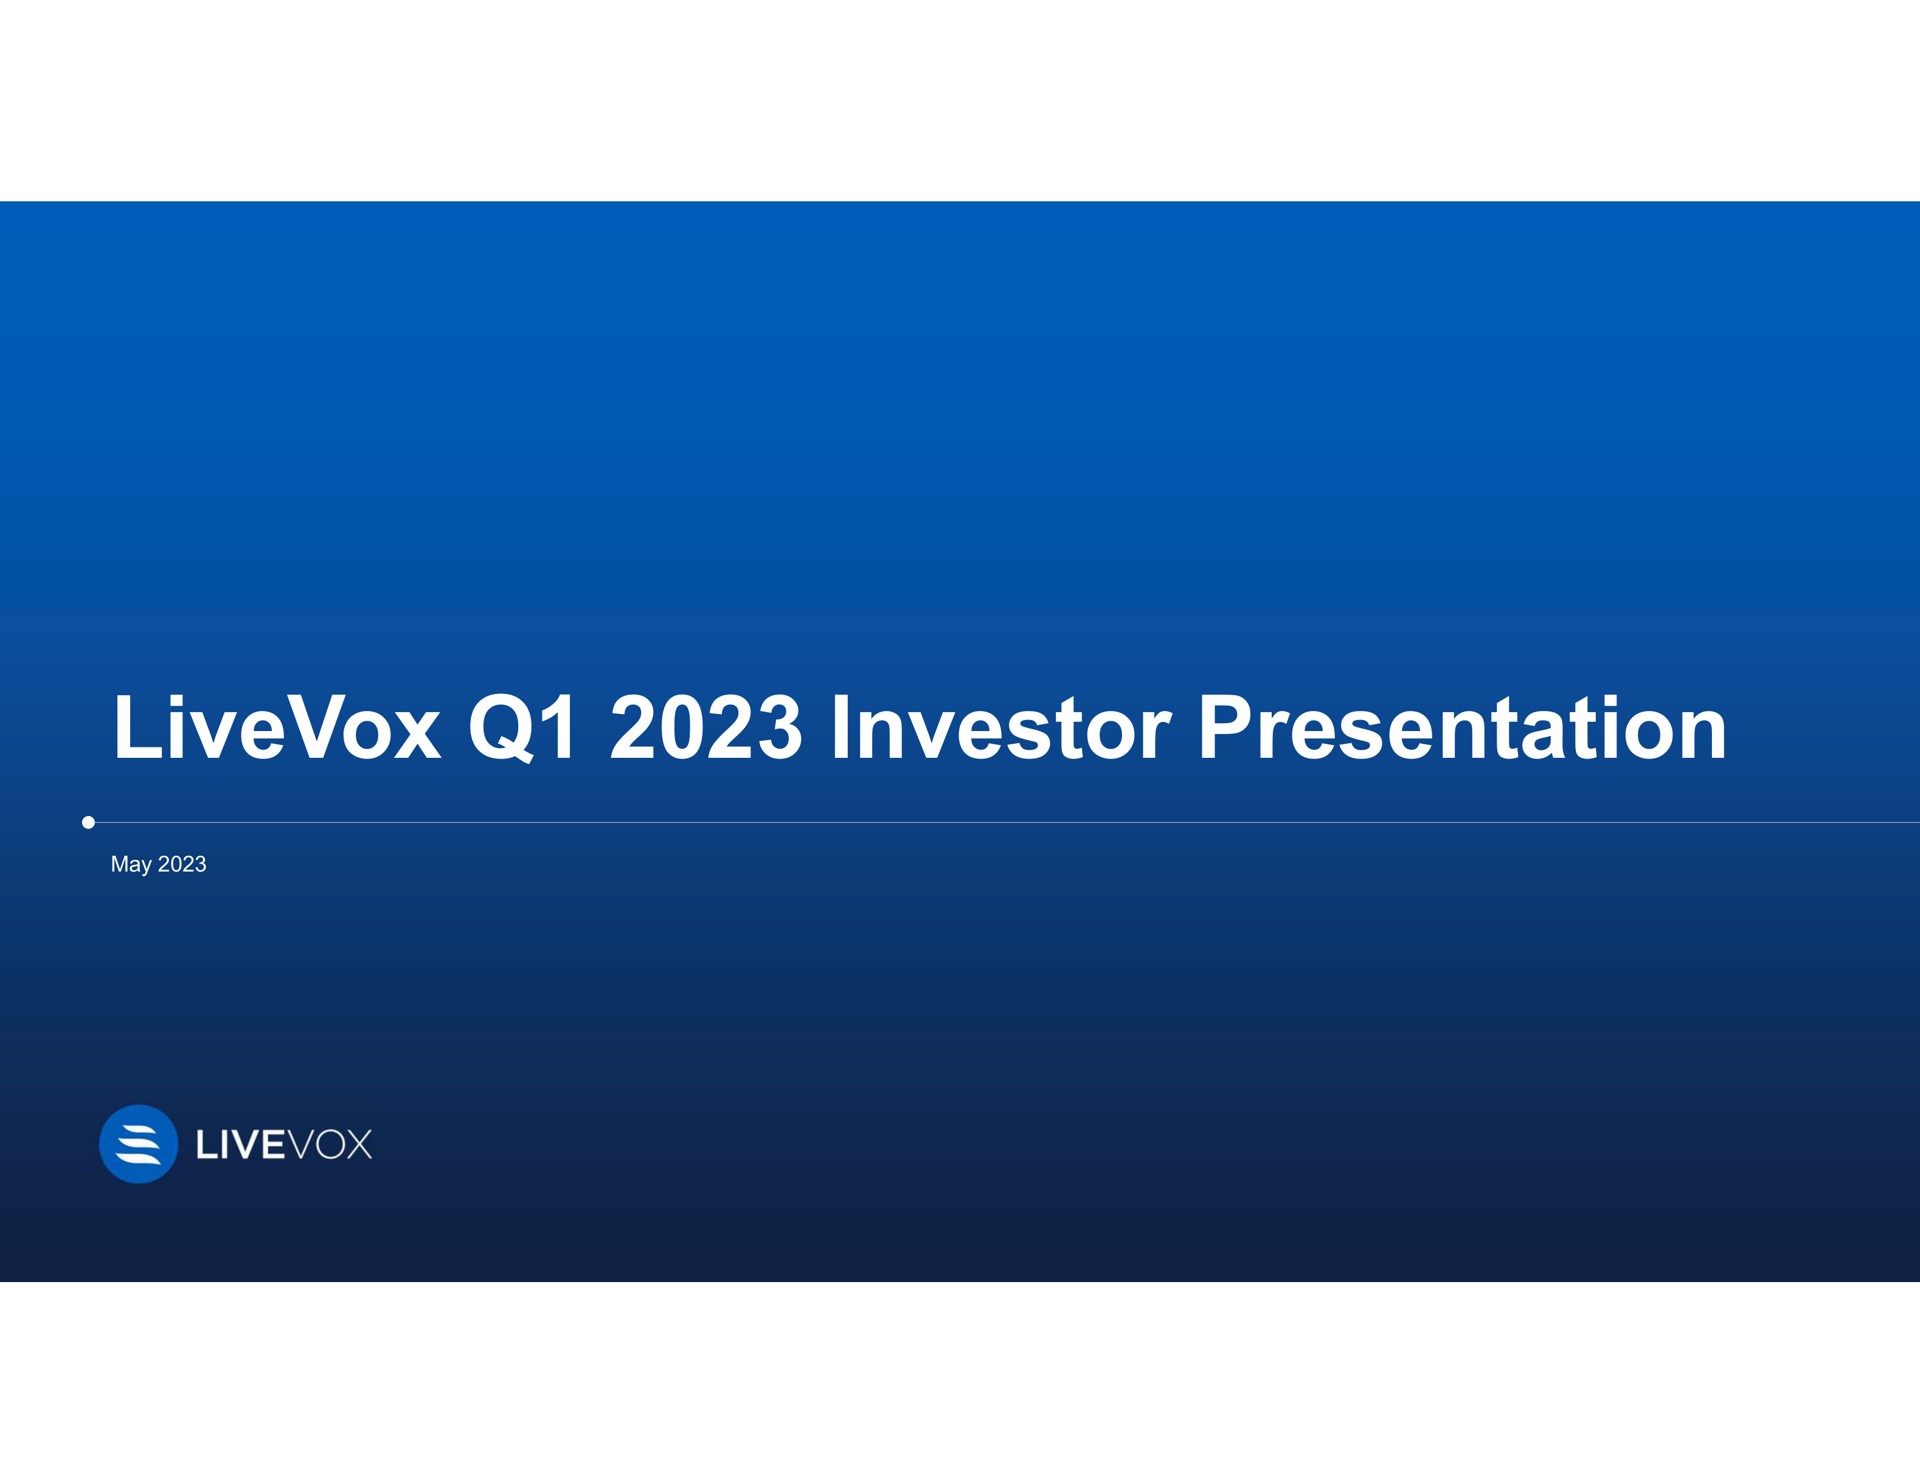 investor presentation | LiveVox